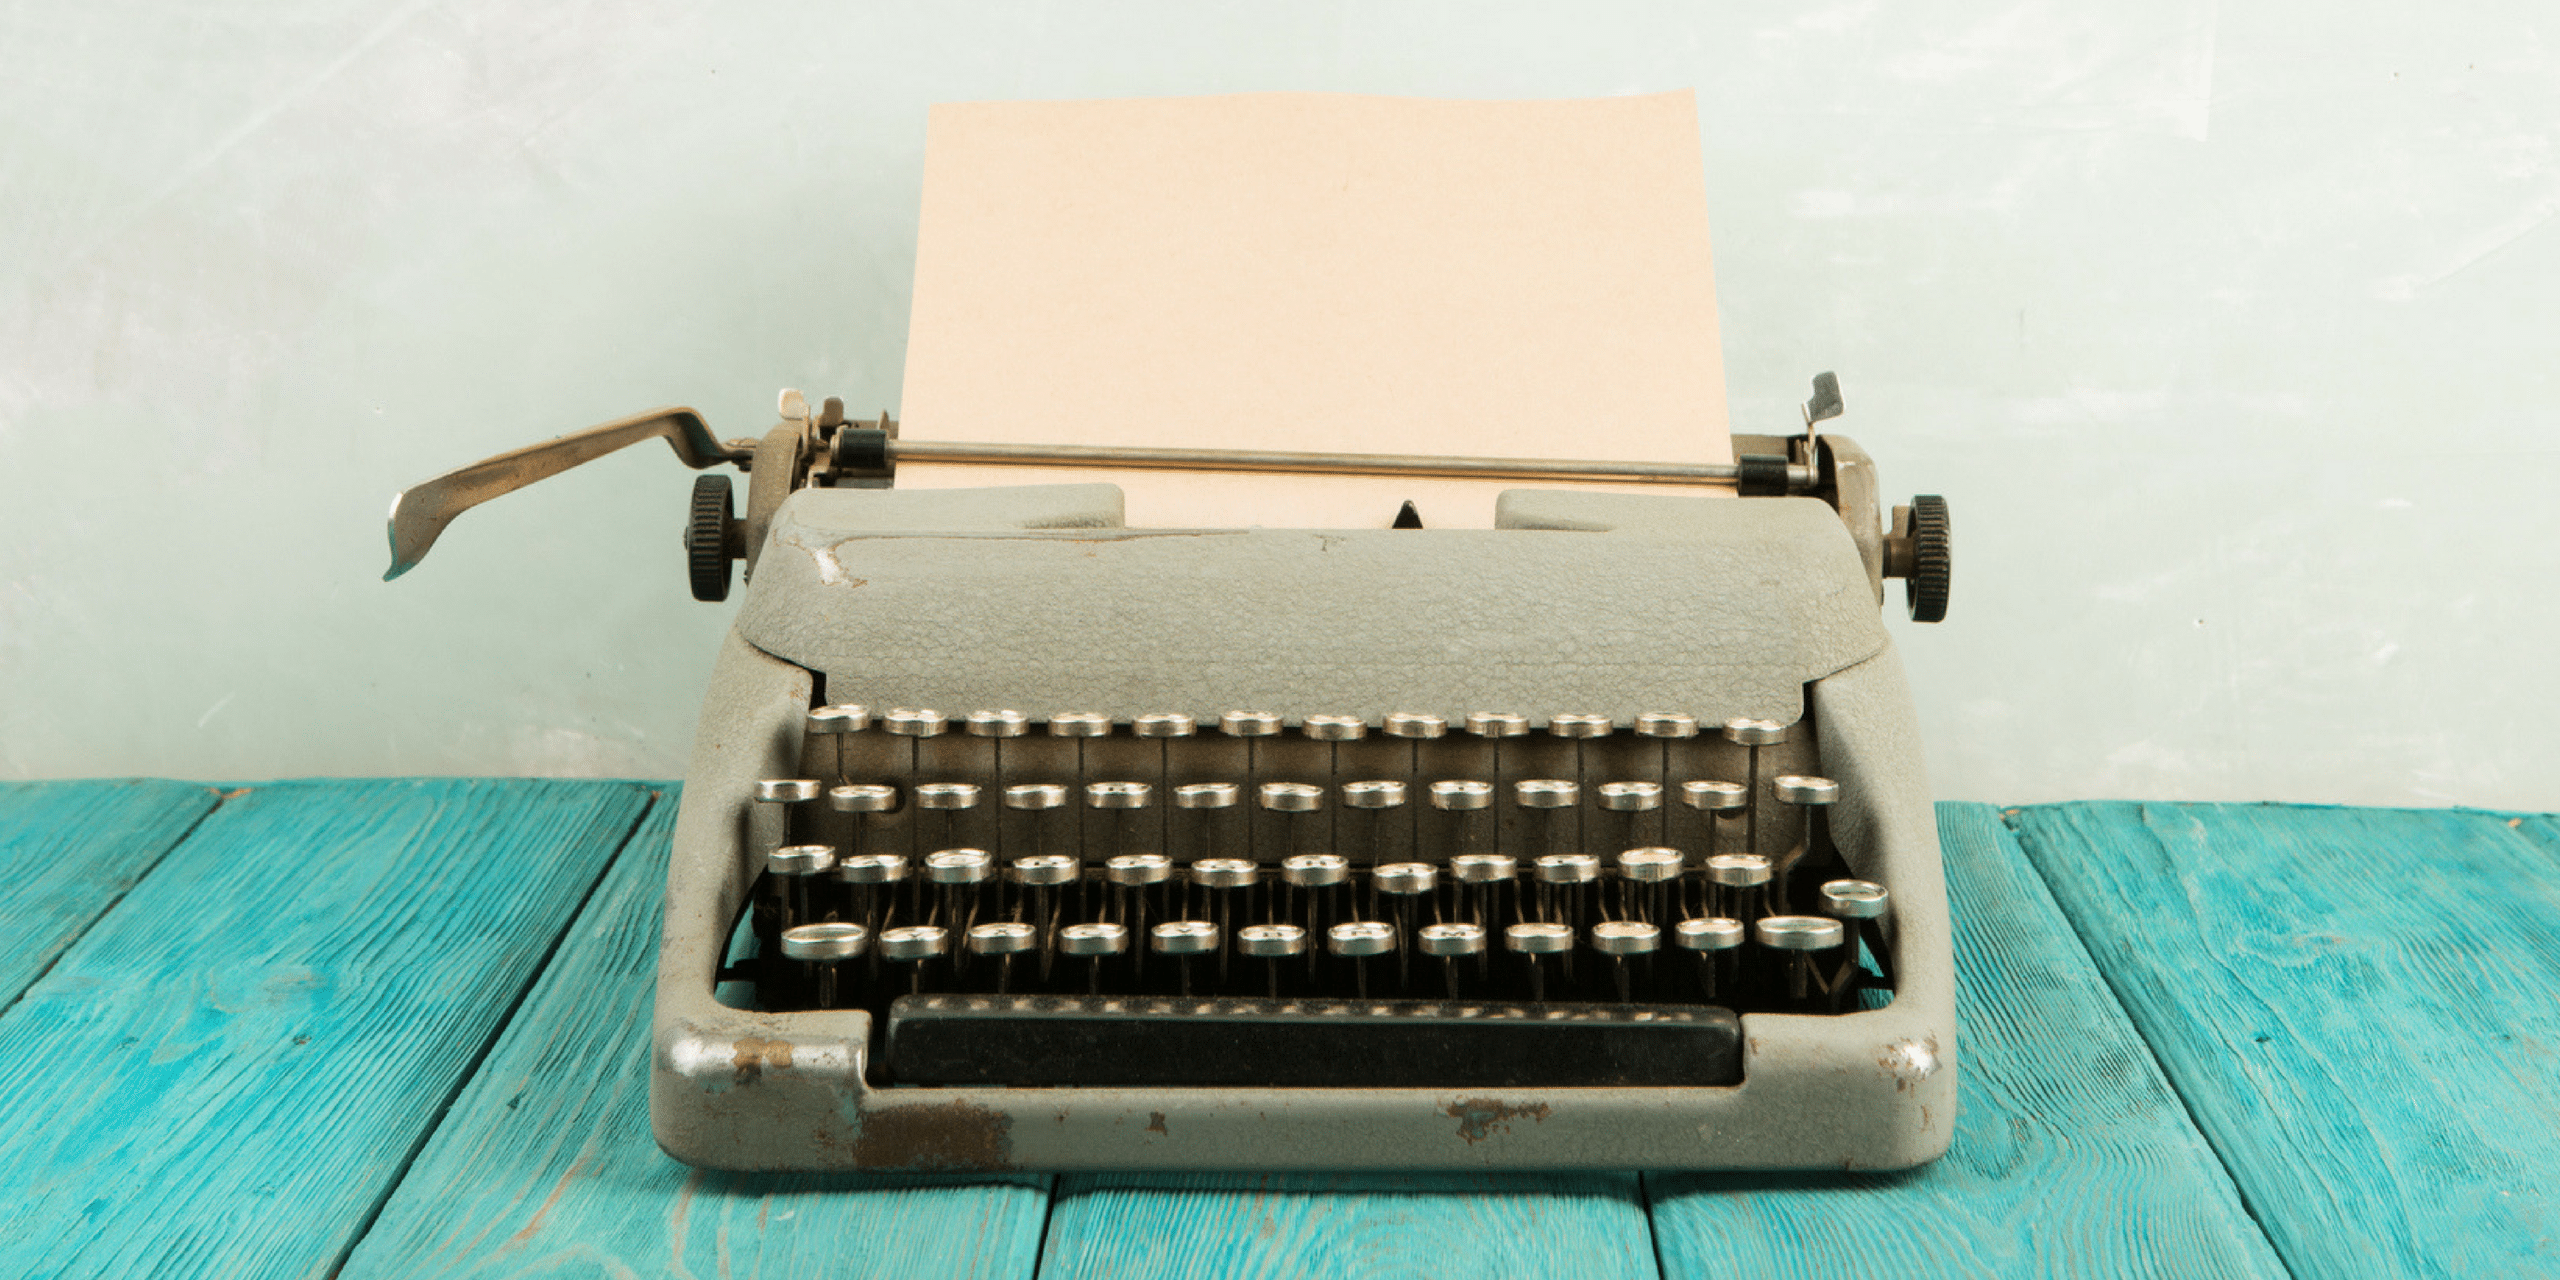 a vintage typewriter